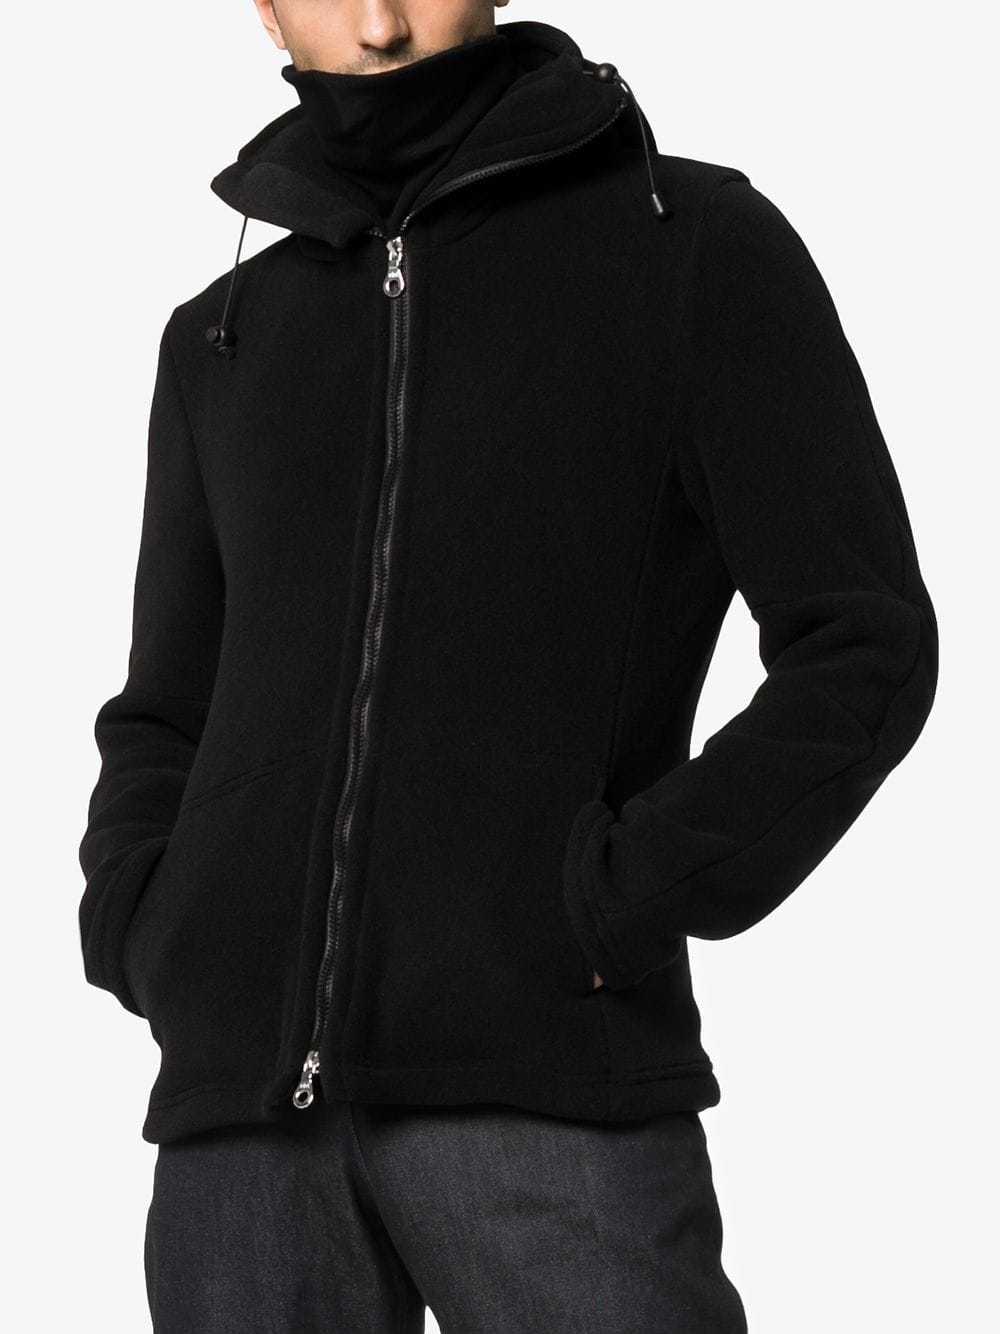 Vexed Generation Ninja Double Zip Hooded Fleece Jacket, $281